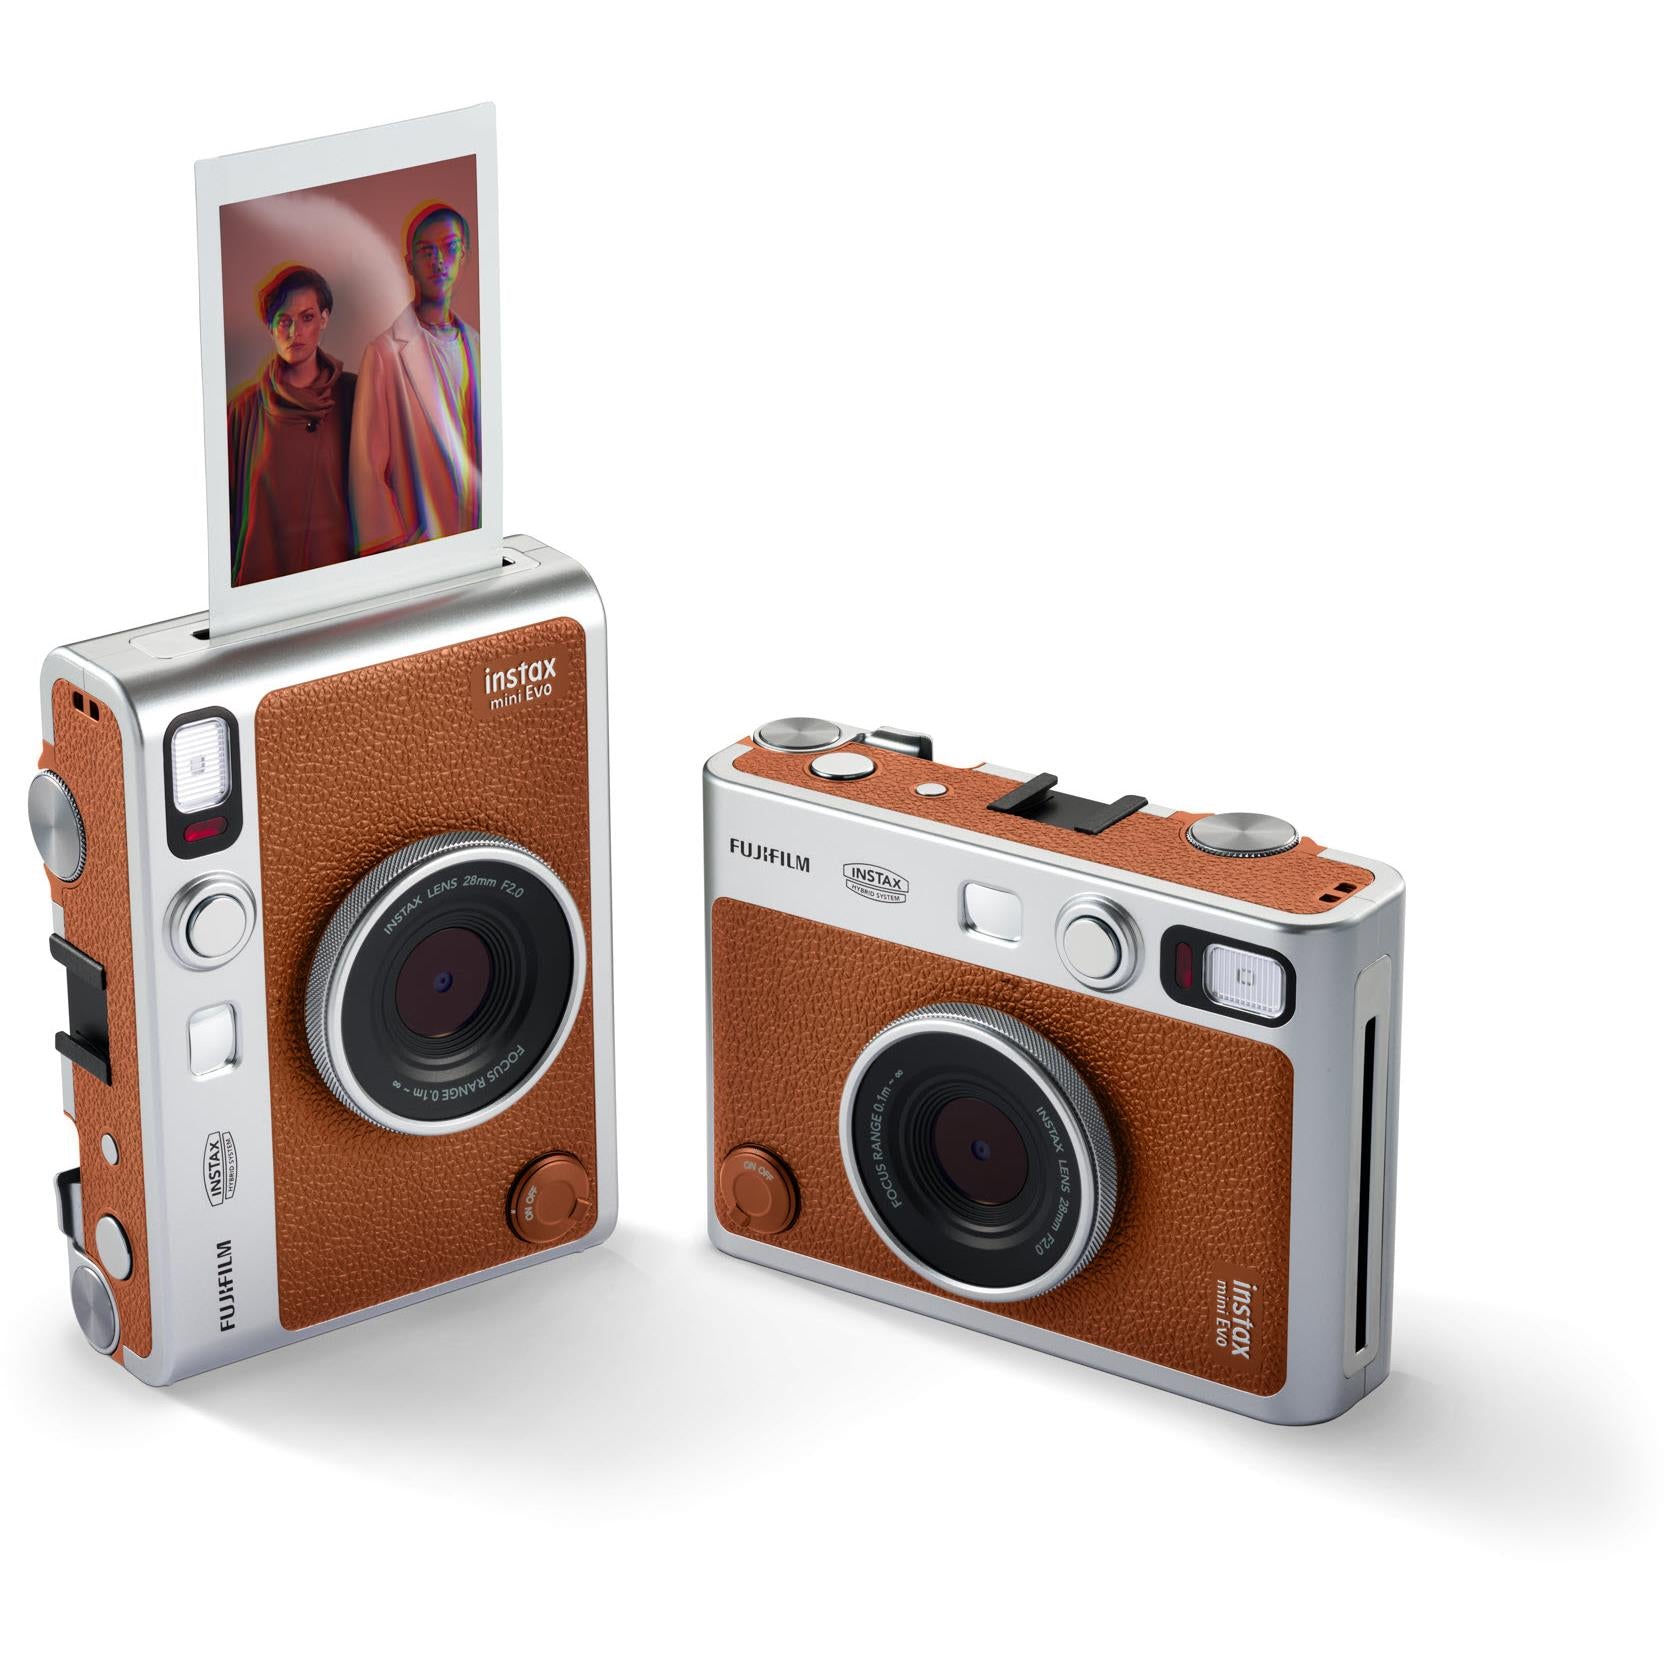 Fujifilm Instax Mini Film Confetti for Instax Mini Cameras (10 Pack) - JB  Hi-Fi